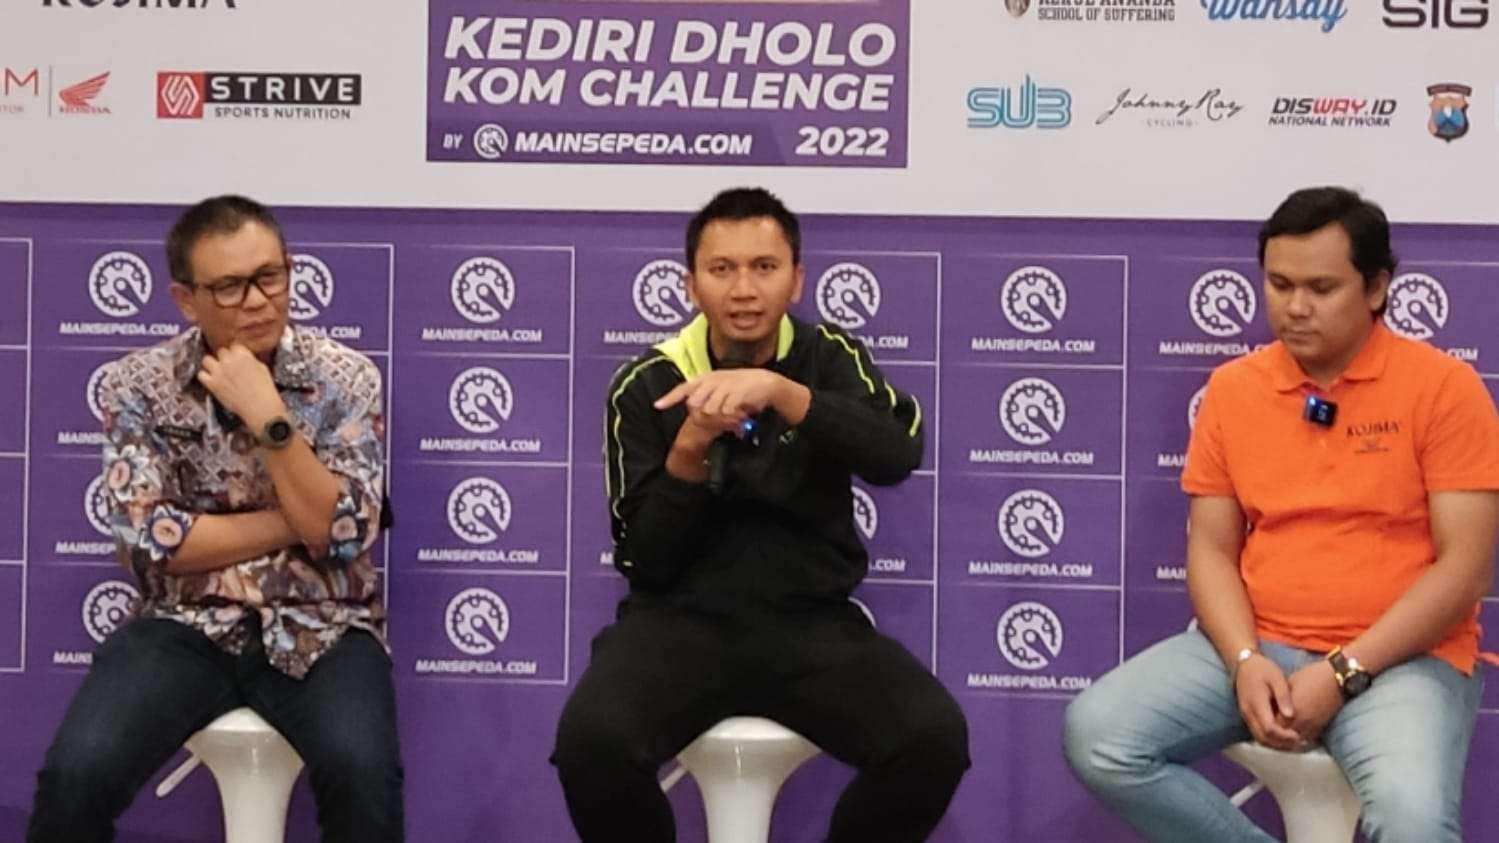 Founder Mainsepeda.com, Azrul Ananda saat menjelaskan event Kediri Dholo Com Challenge 2022 di Surabaya, Jumat 2 Desember 2022. (Foto: Fariz Yarbo/Ngopibareng.id)